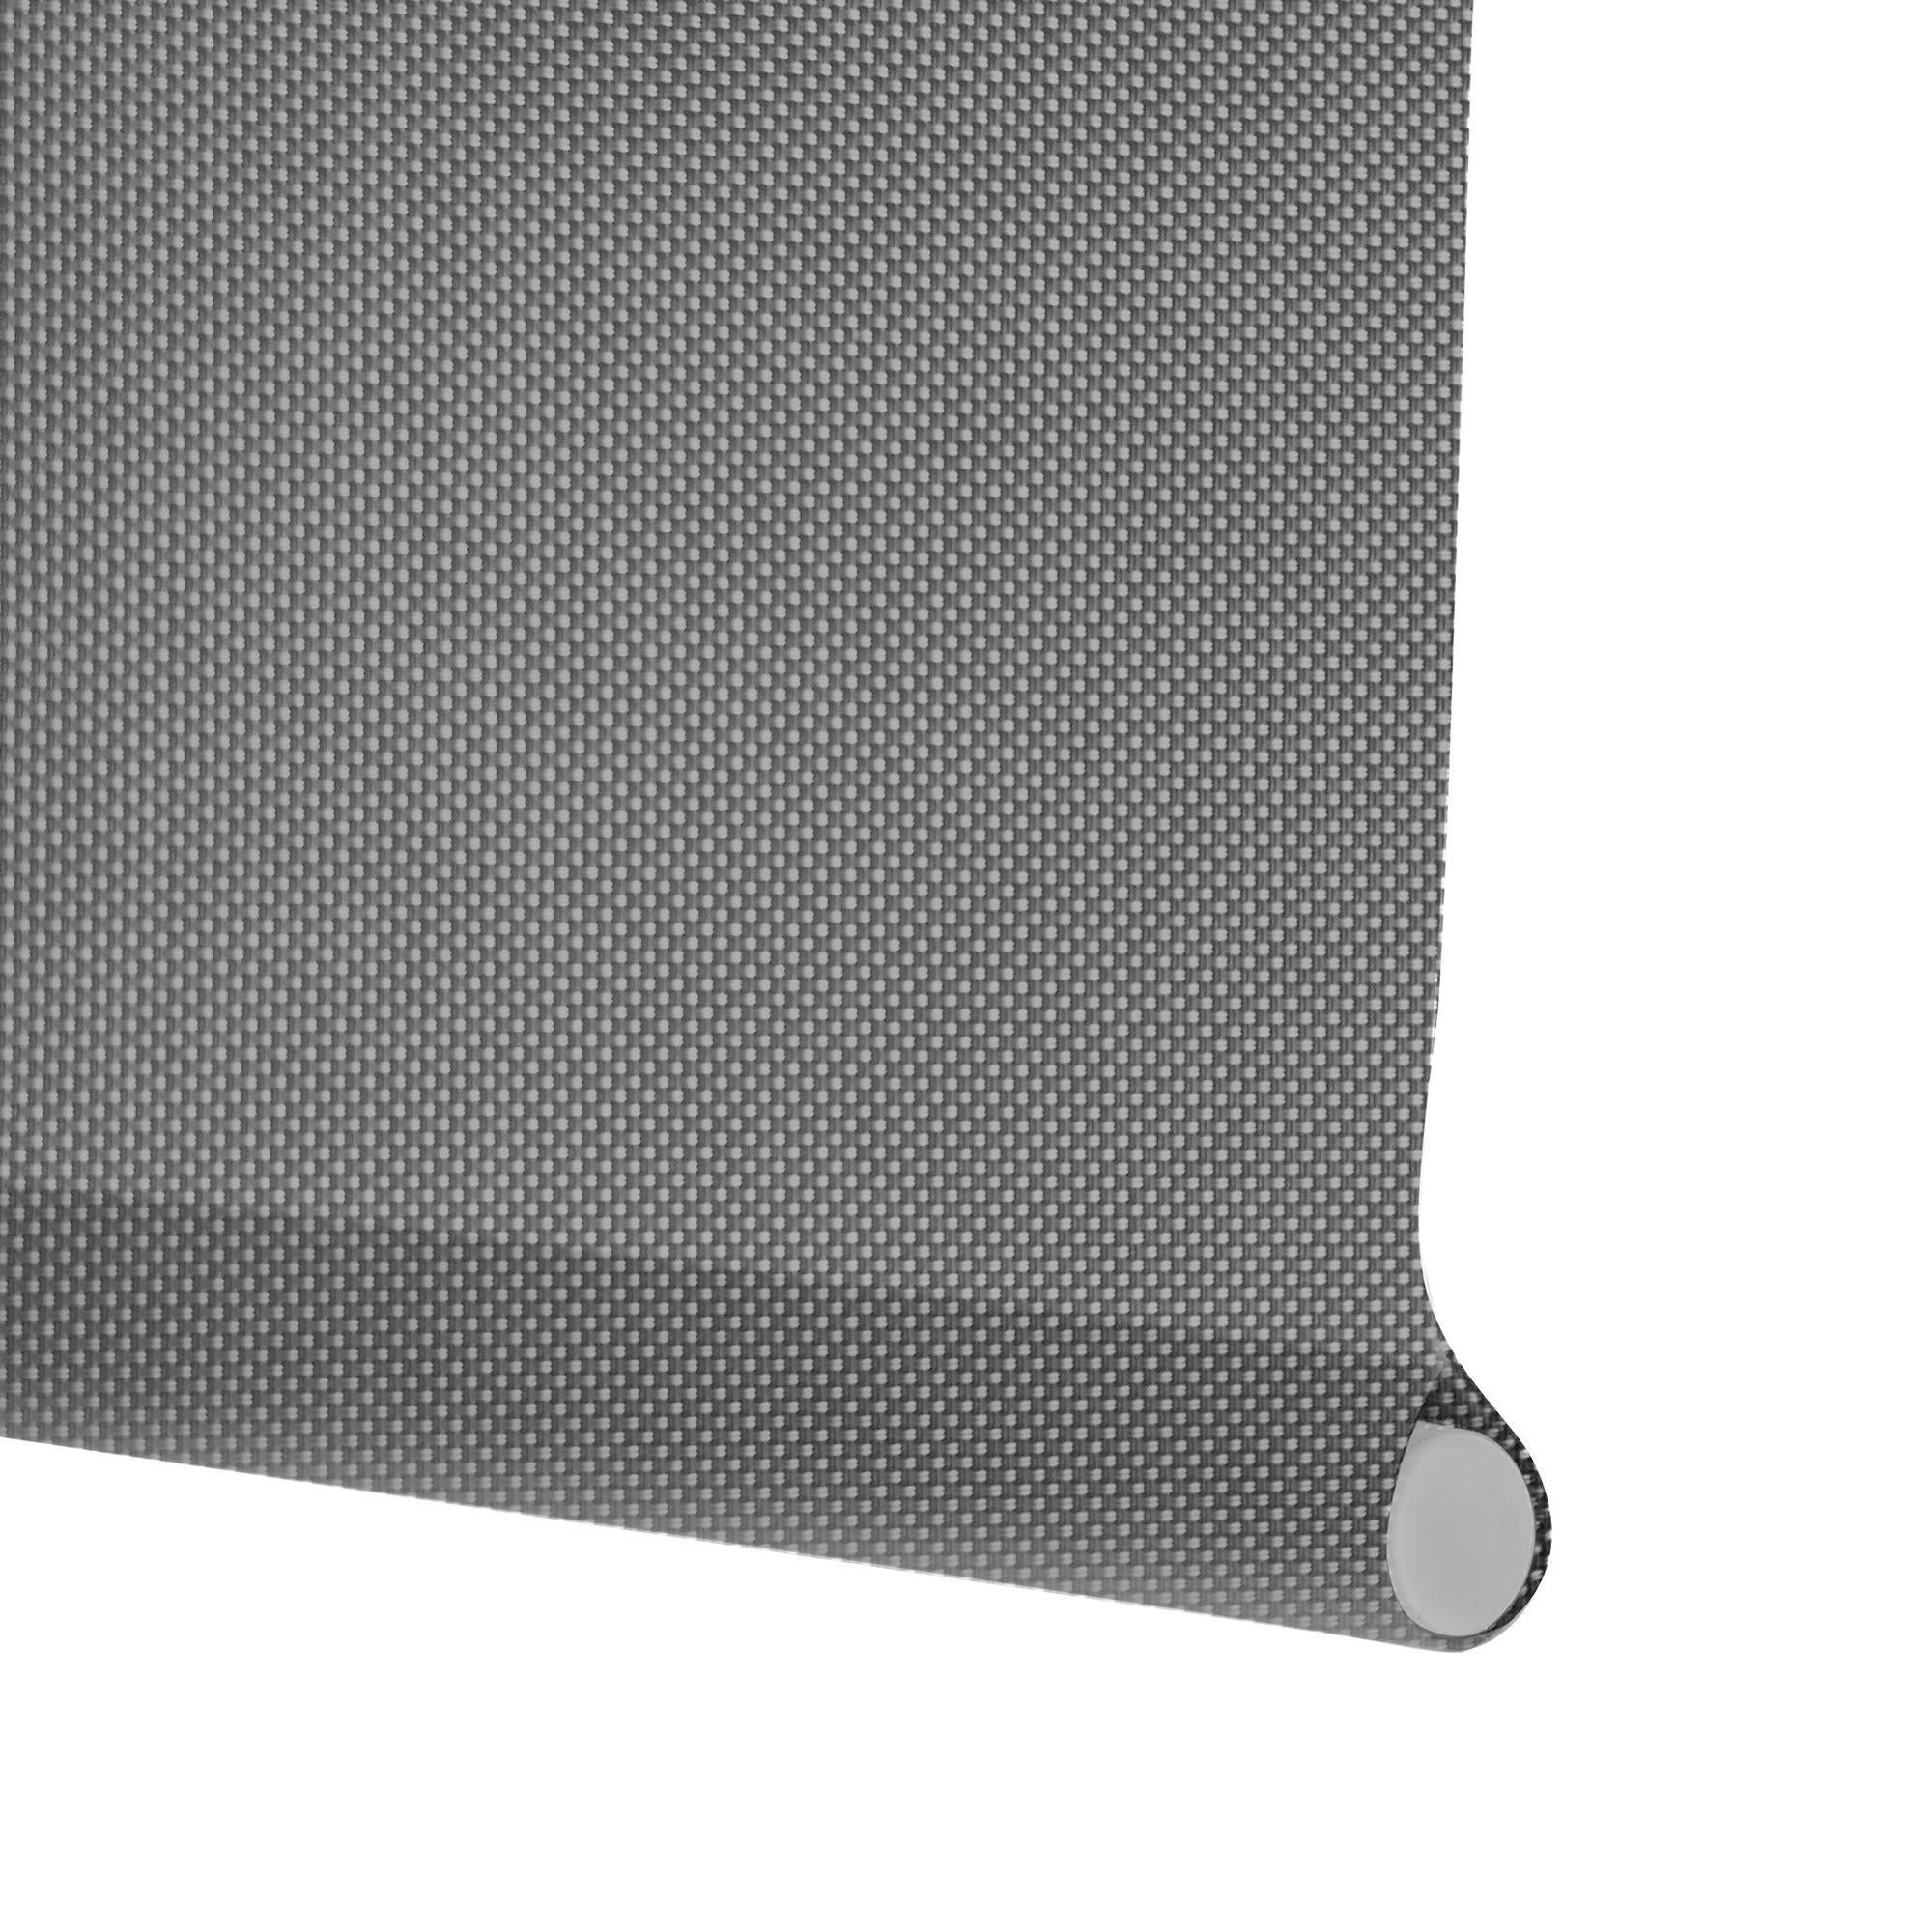 Tenda a rullo filtrante INSPIRE Screen grigio perla 75 x 250 cm - 4